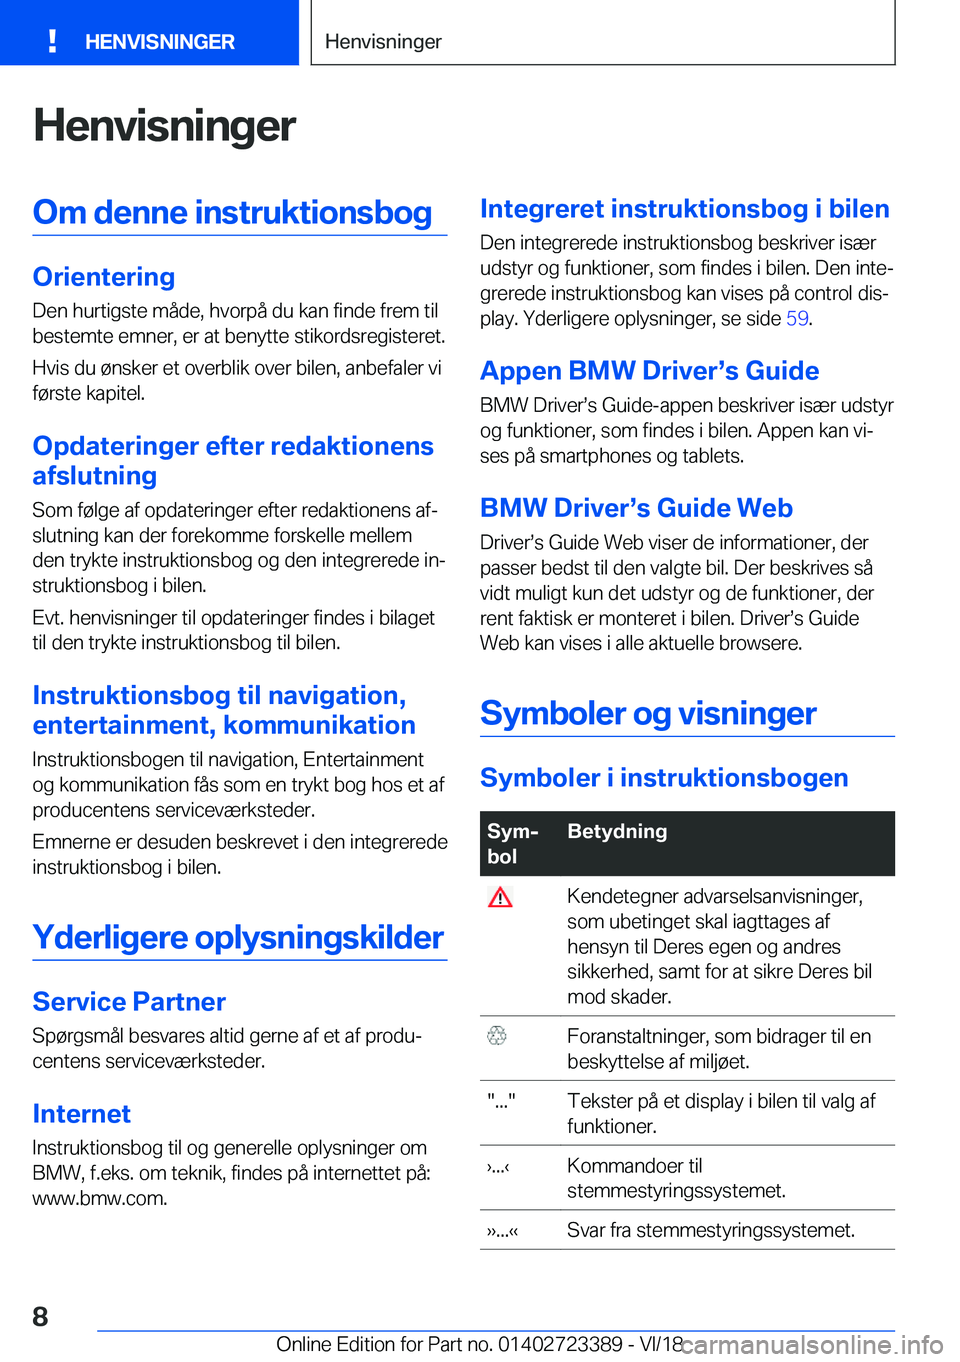 BMW 2 SERIES COUPE 2019  InstruktionsbØger (in Danish) �H�e�n�v�i�s�n�i�n�g�e�r�O�m��d�e�n�n�e��i�n�s�t�r�u�k�t�i�o�n�s�b�o�g
�O�r�i�e�n�t�e�r�i�n�g�D�e�n��h�u�r�t�i�g�s�t�e��m�å�d�e�,��h�v�o�r�p�å��d�u��k�a�n��f�i�n�d�e��f�r�e�m��t�i�l
�b�e�s